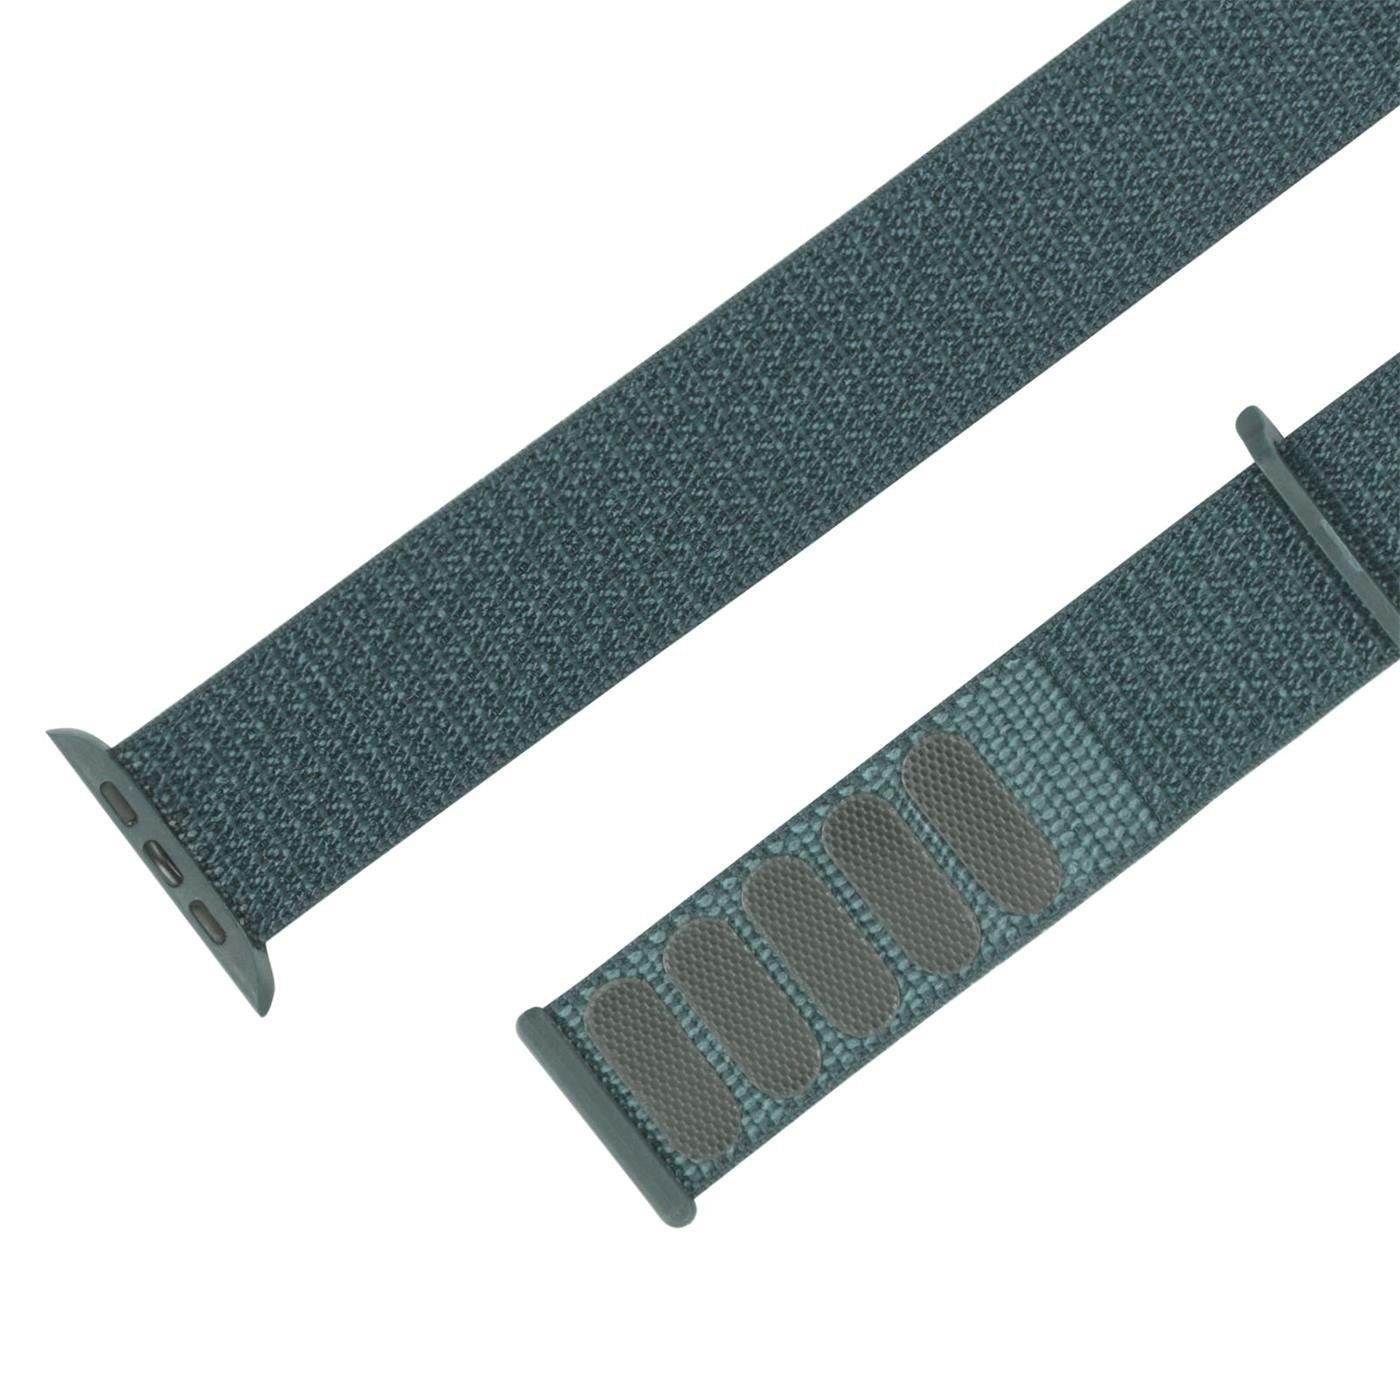 CoolGadget Smartwatch-Armband 40mm Nylon Watch Ersatz Uhren Gehäuse, Klettverschluss für mit mit Gen. Apple 2. Band Grün Serie Stoff